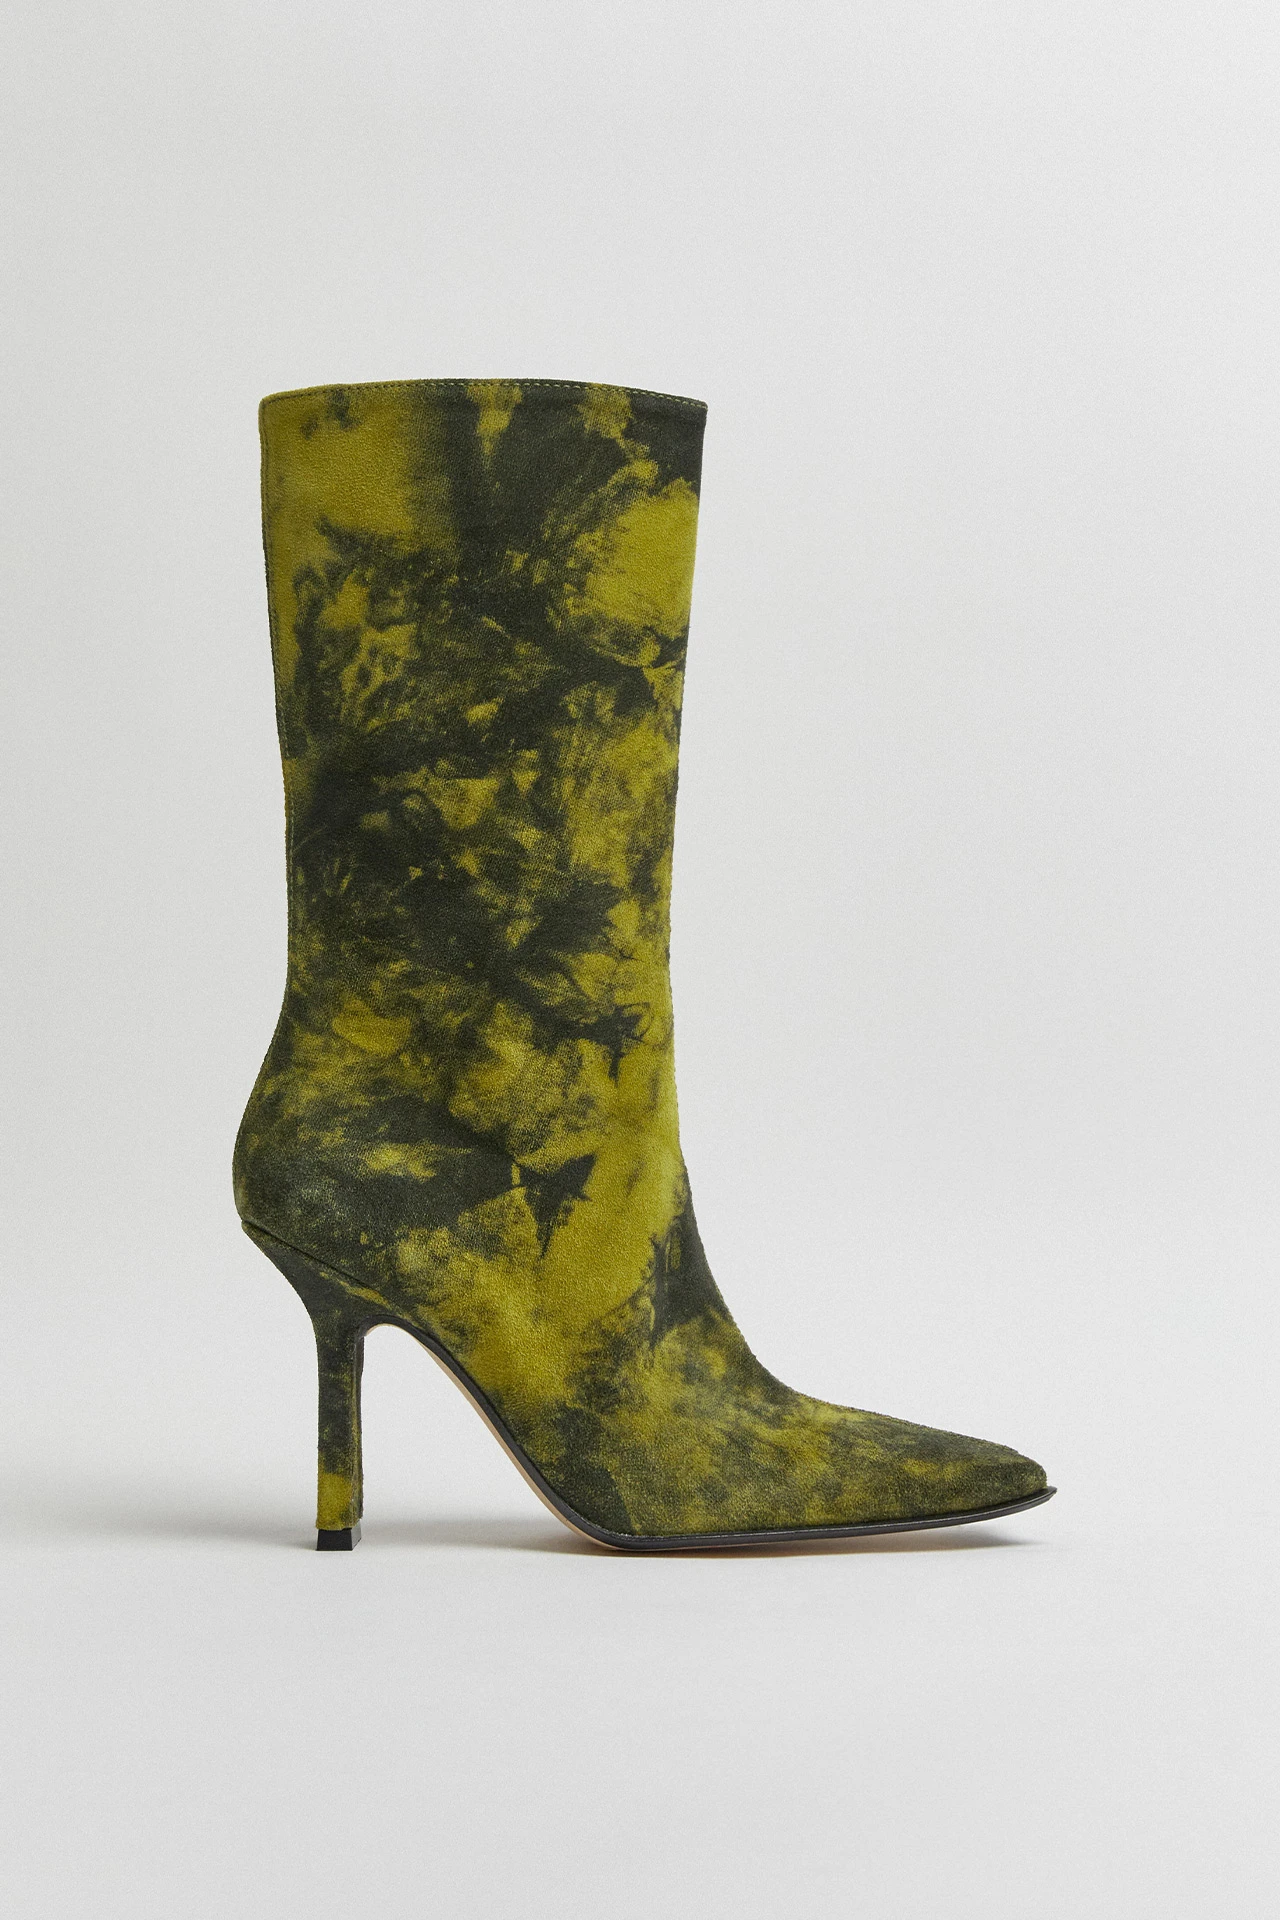 Miista-noor-yellow-boots-01